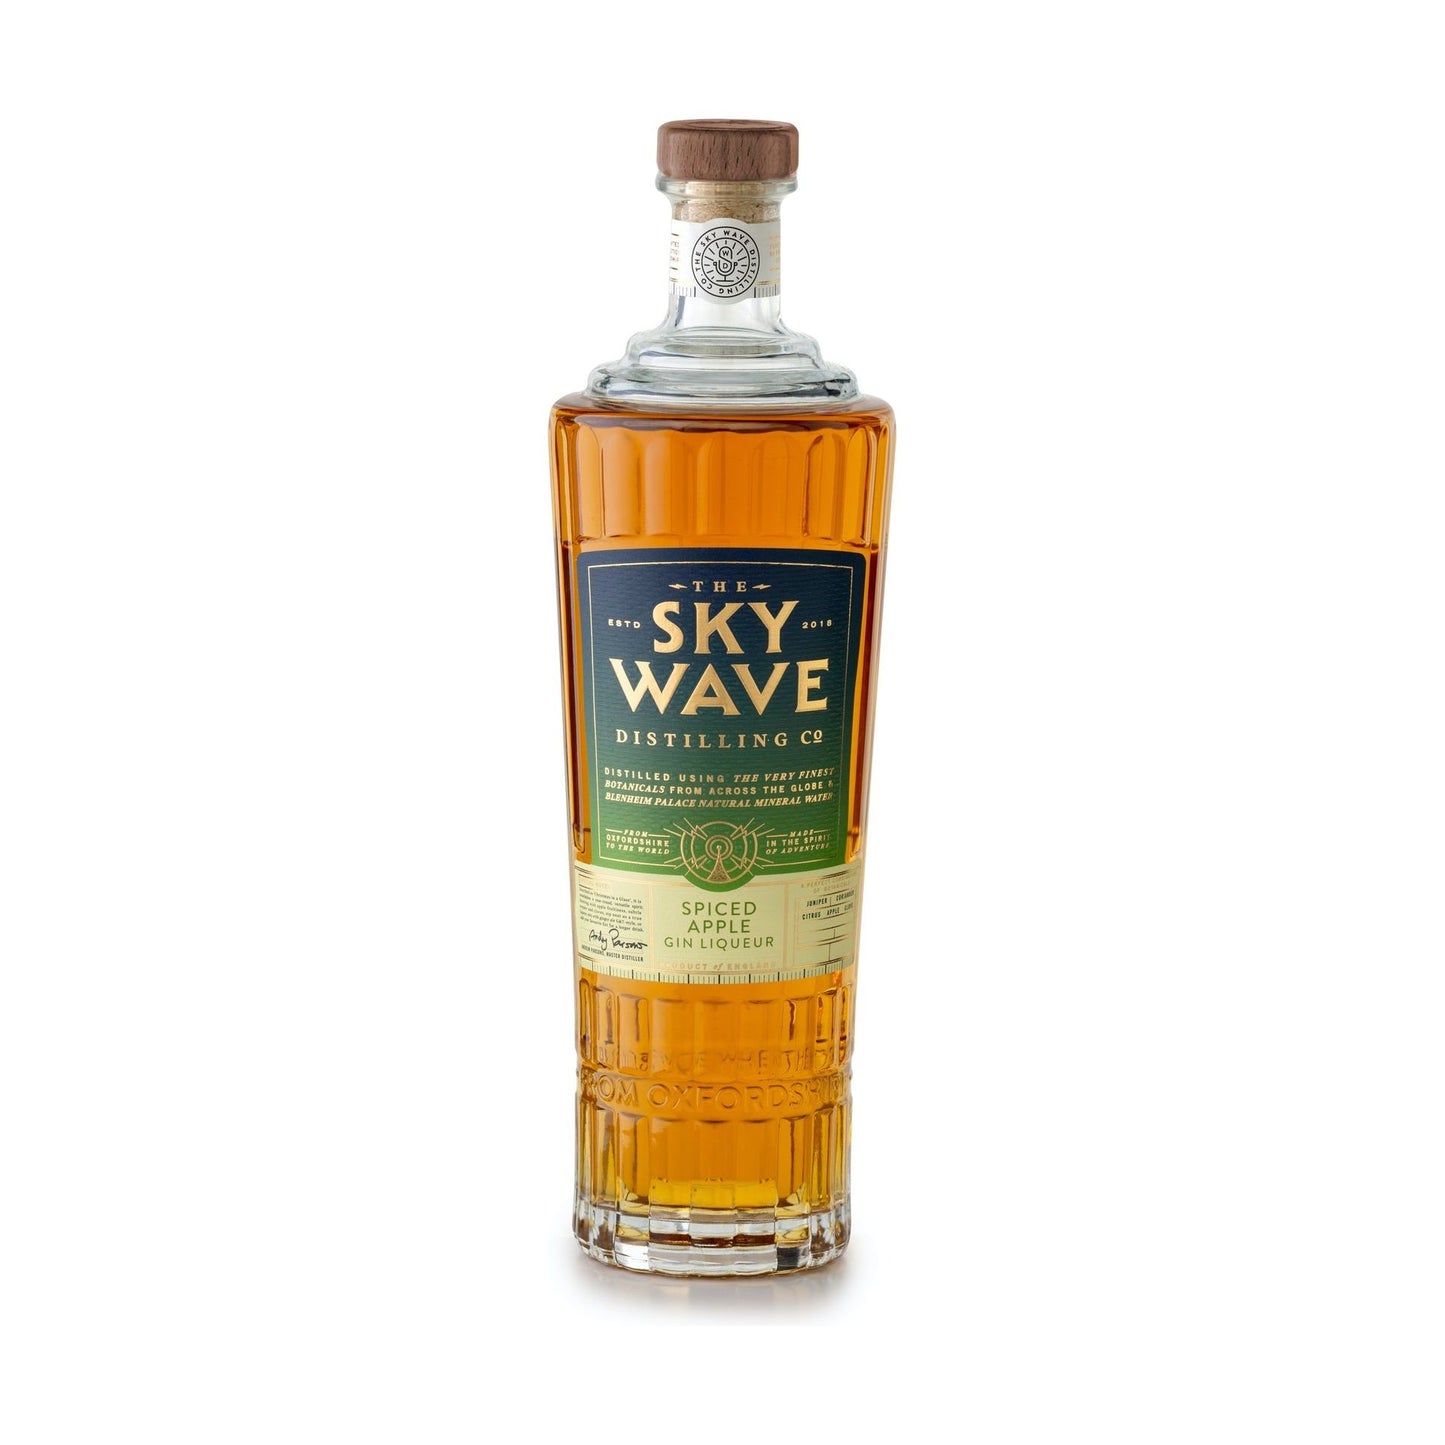 Sky Wave, Spiced Apple Gin Liqueur